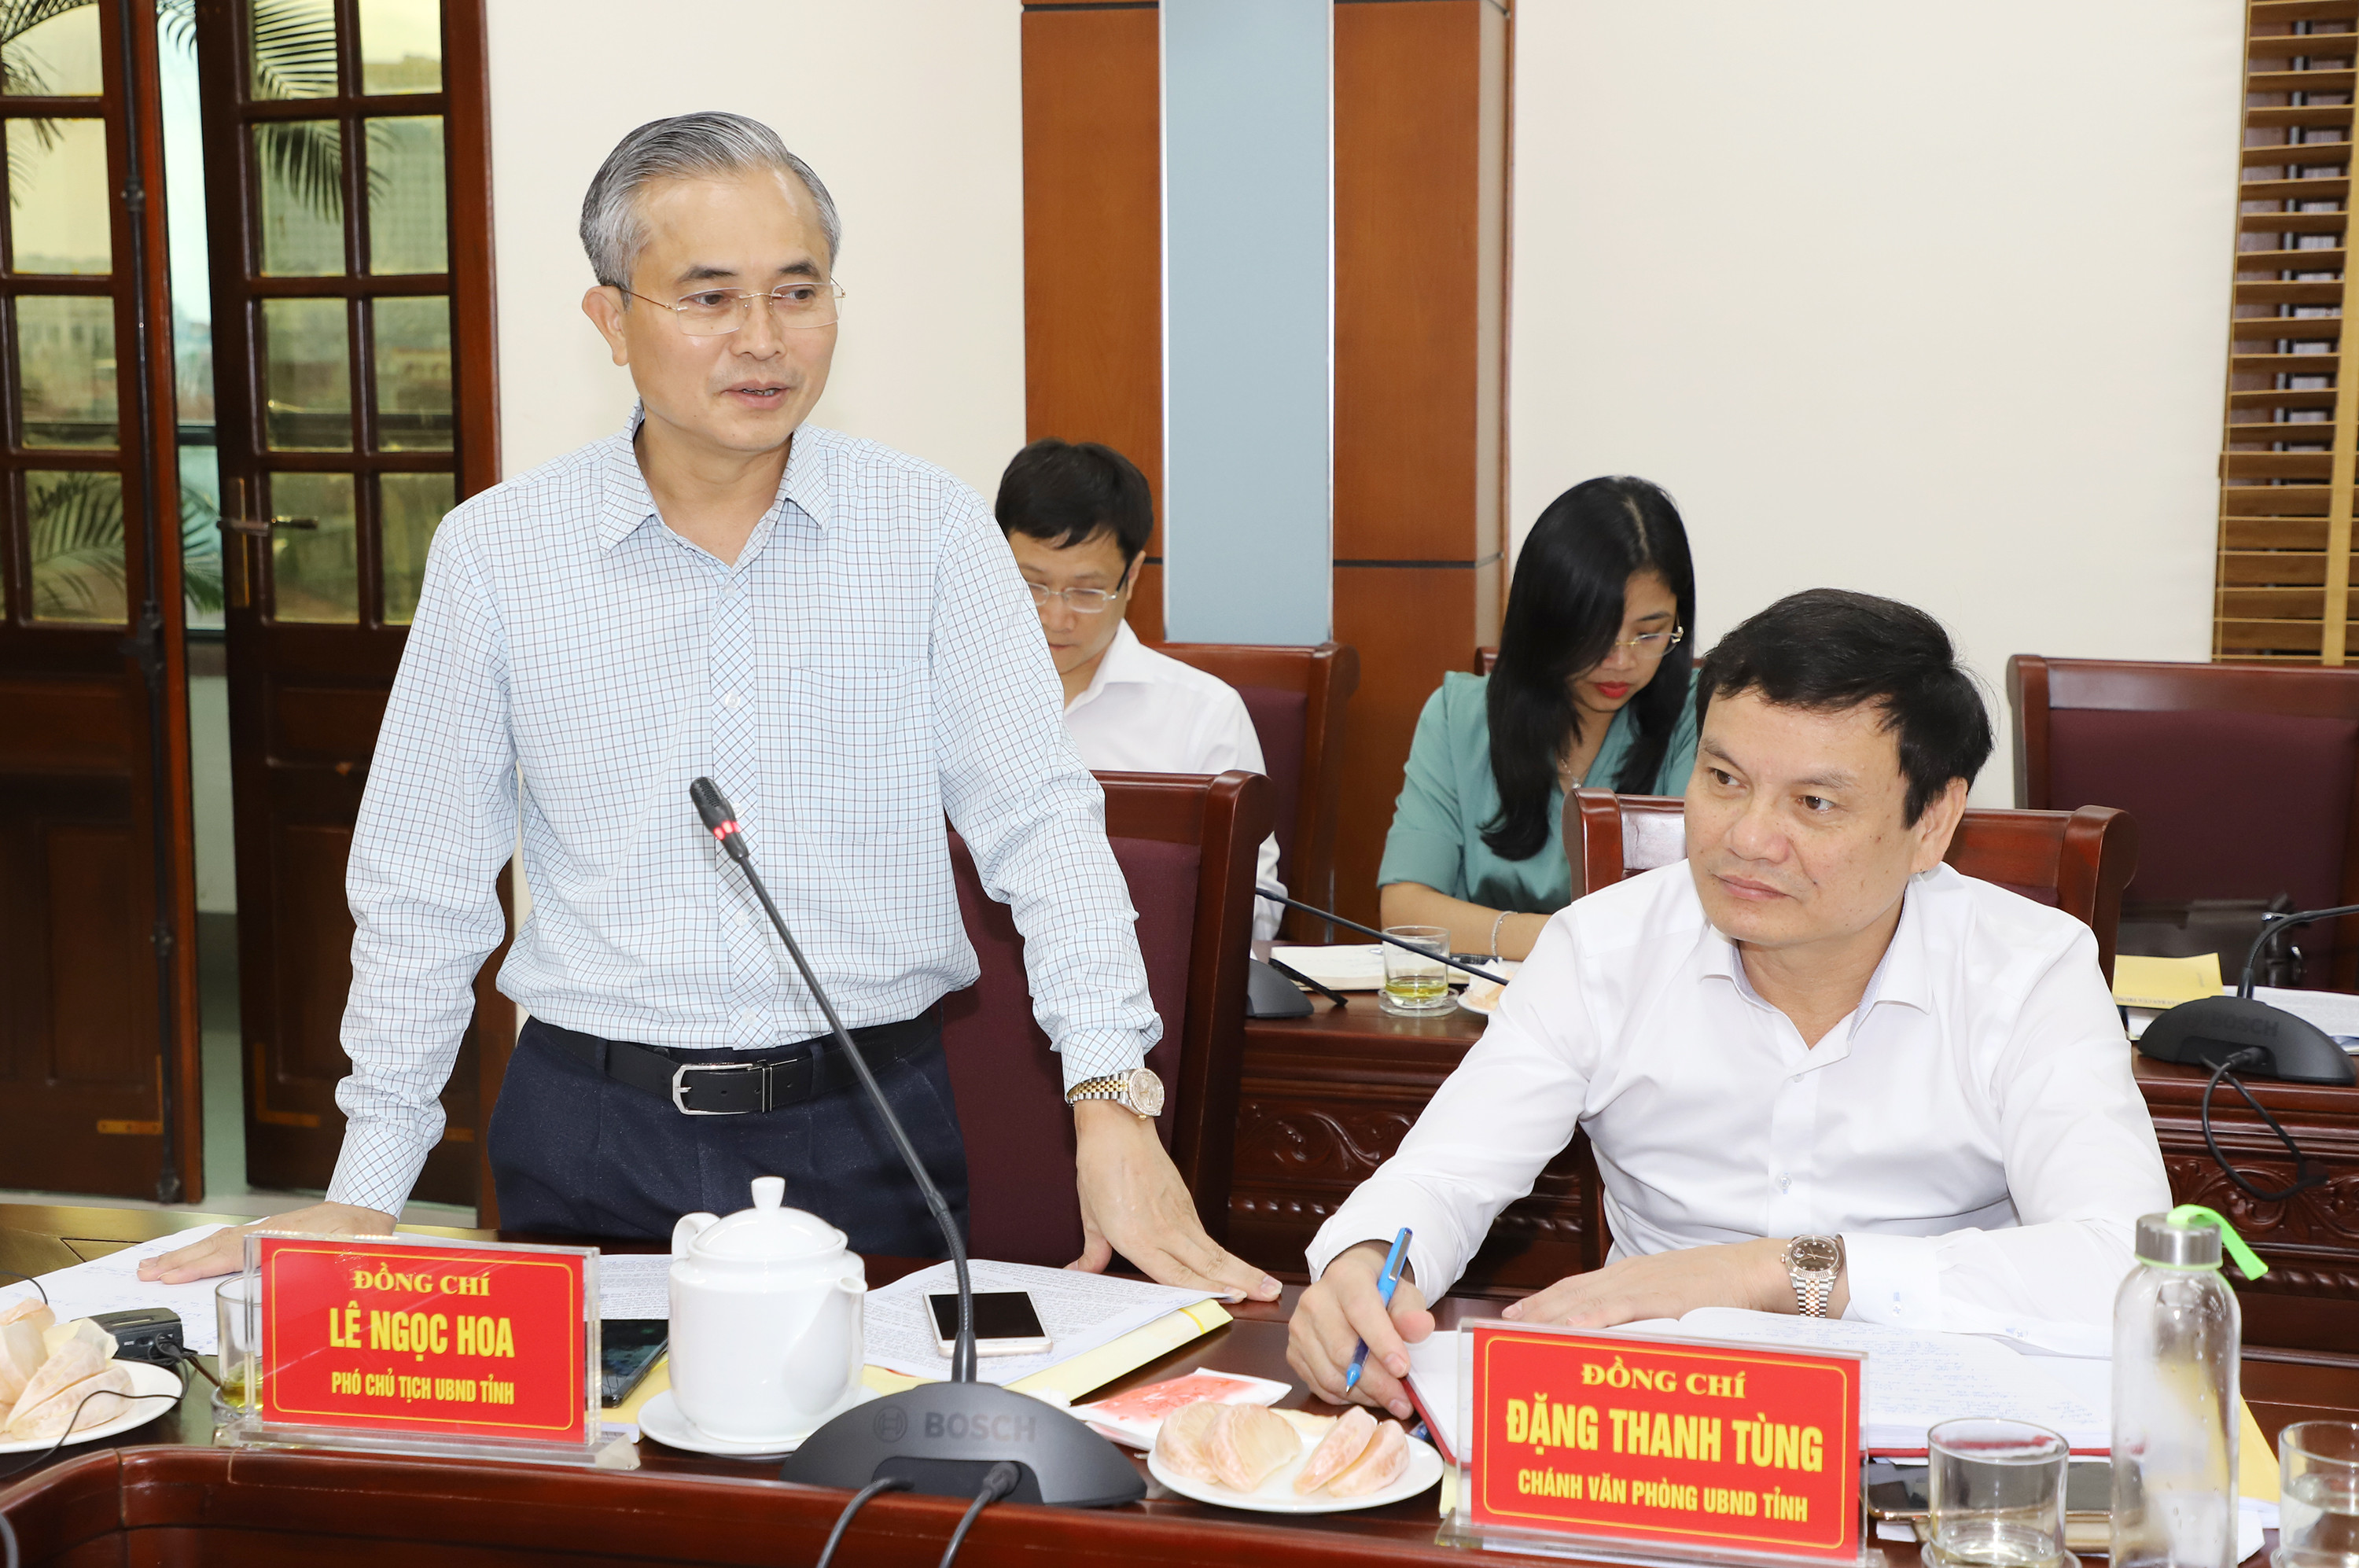 Phó chủ tịch UBND tỉnh Lê Ngọc Hoa phát biểu tại buổi làm việc. Ảnh: Phạm Bằng